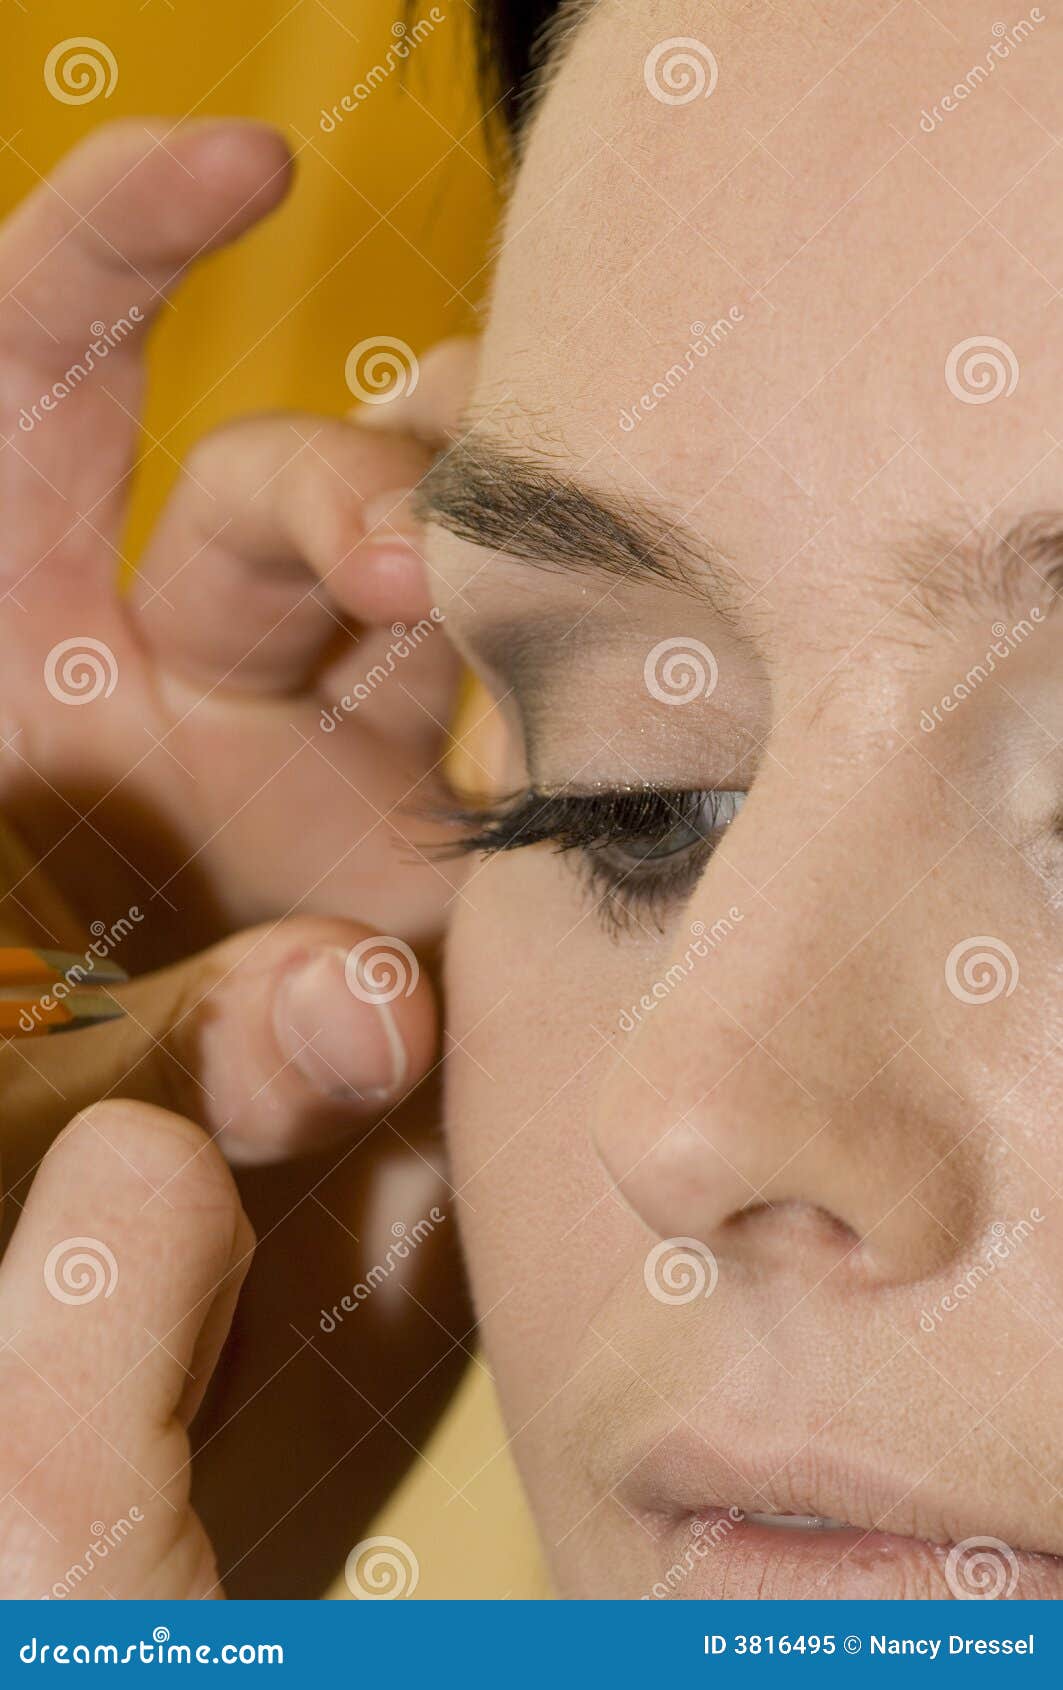 cosmetics on eyelashes